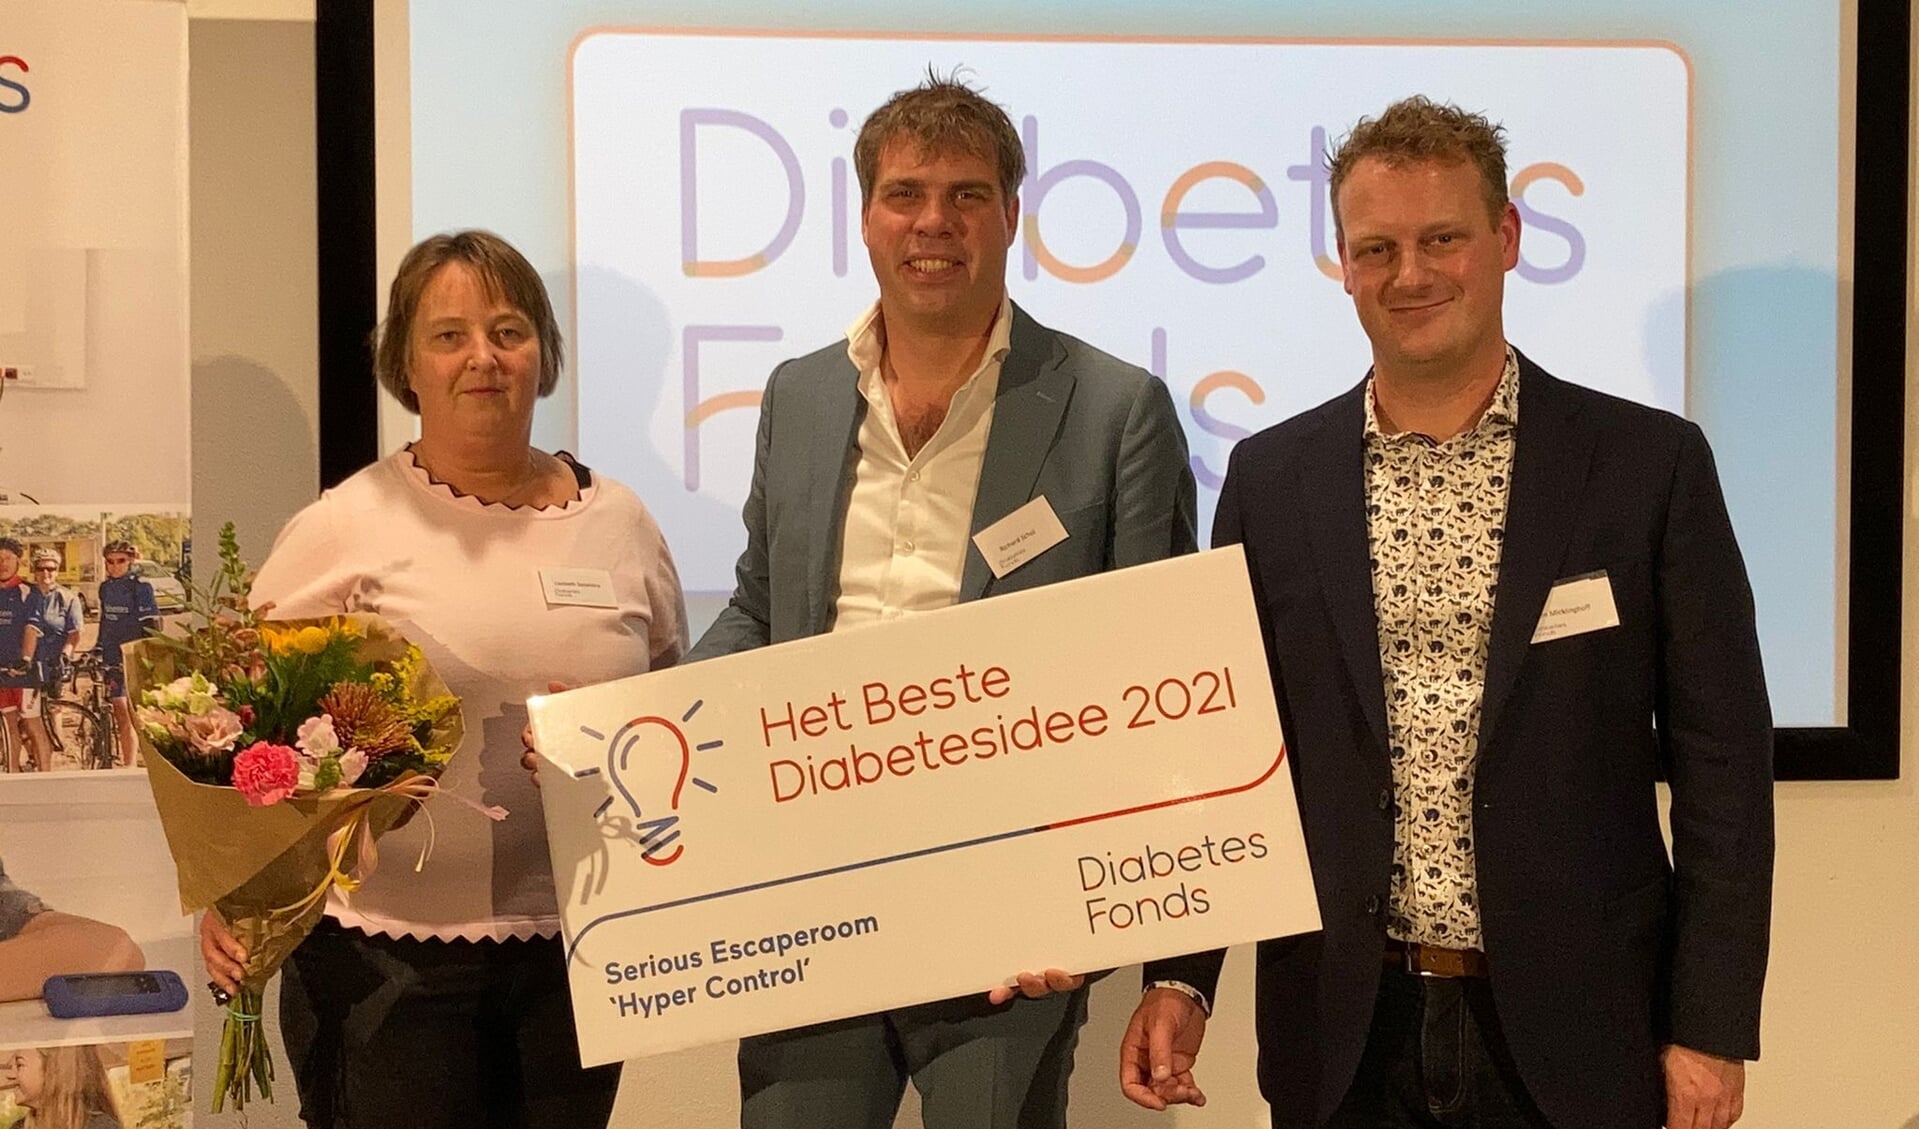 V.l.n.r. Liesbeth Spoelstra, Richard Schol (midden) en Tim Micklinghoff ontvangen met Hyper Control de prijs voor Het Beste Diabetesidee 2021.